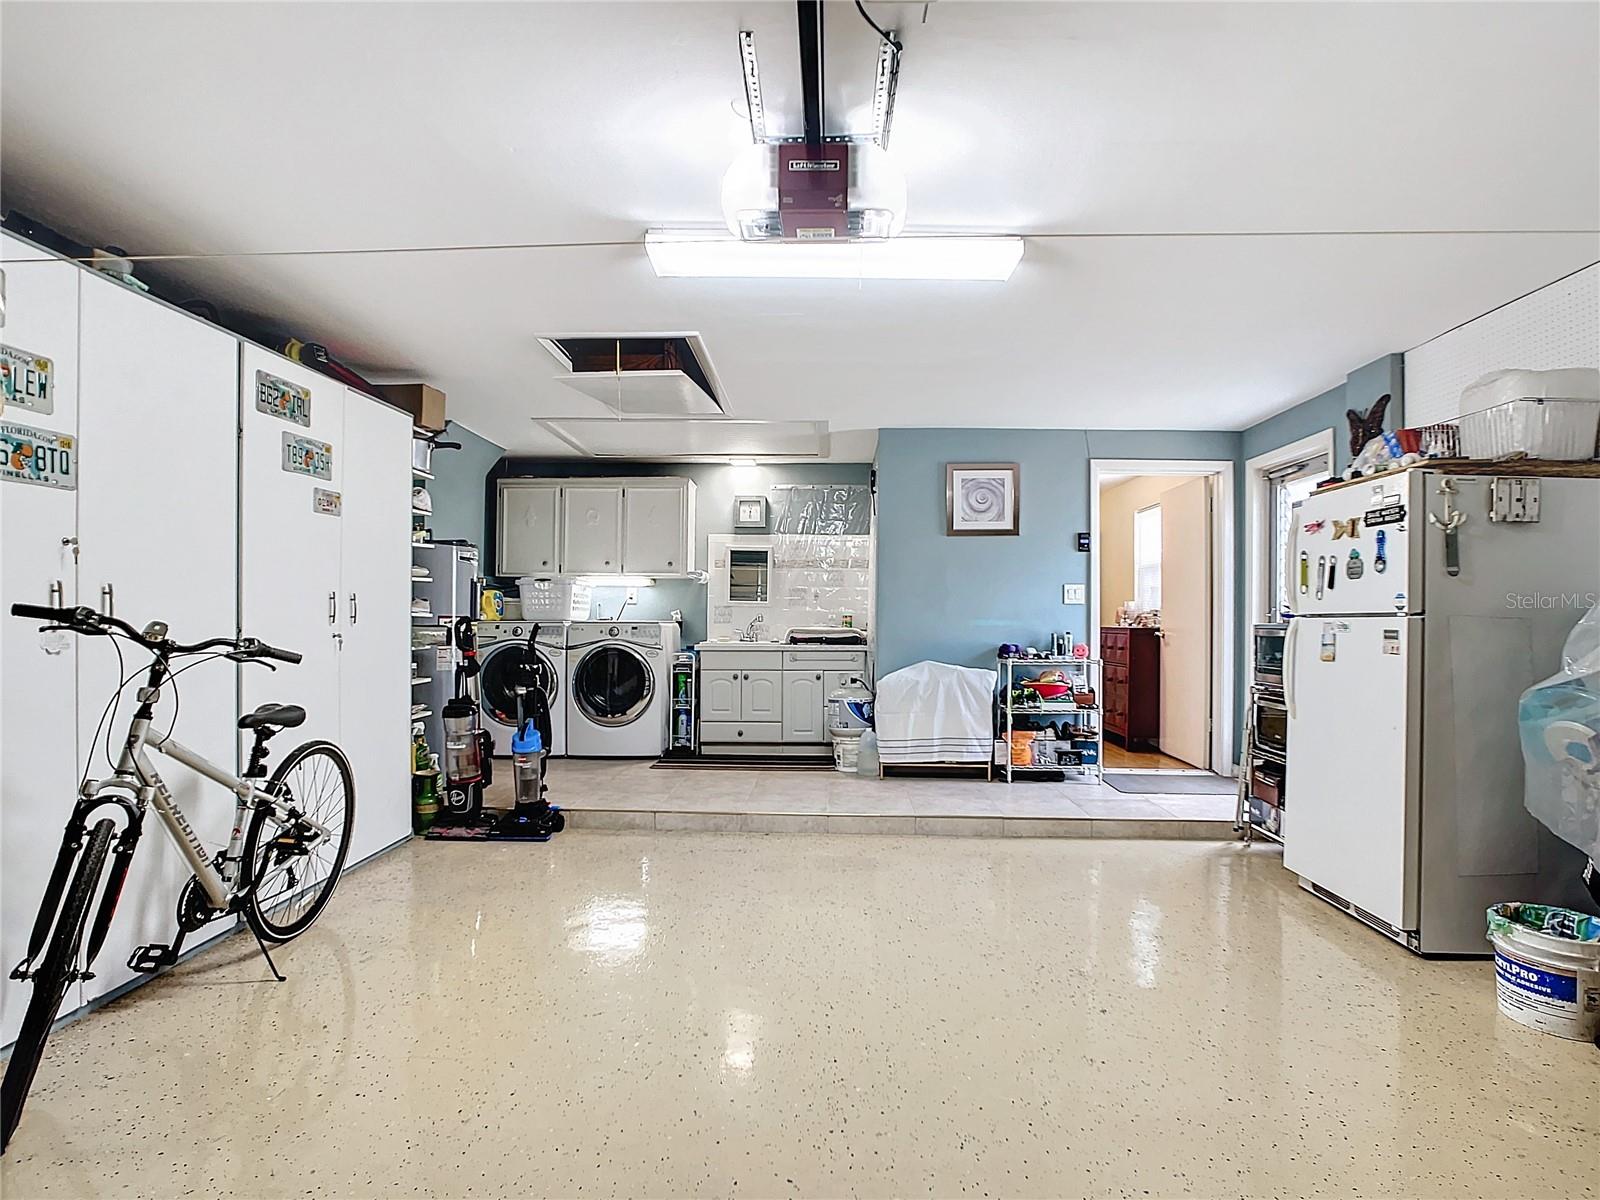 Garage - Laundry Area - Possible Dog Washing Station